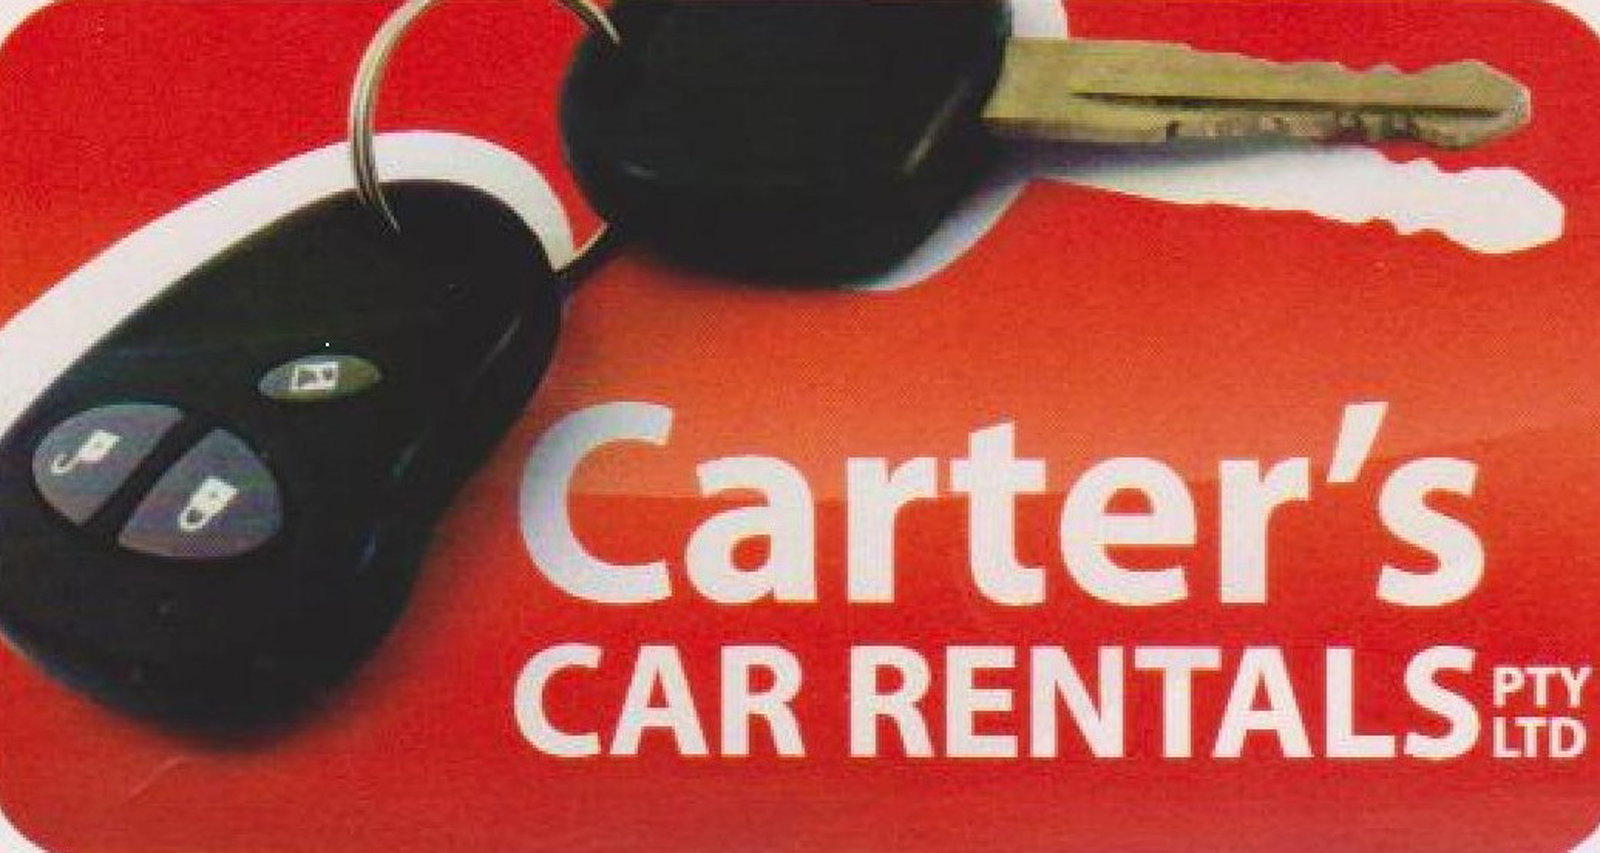 Carters Car Rentals Coolangatta